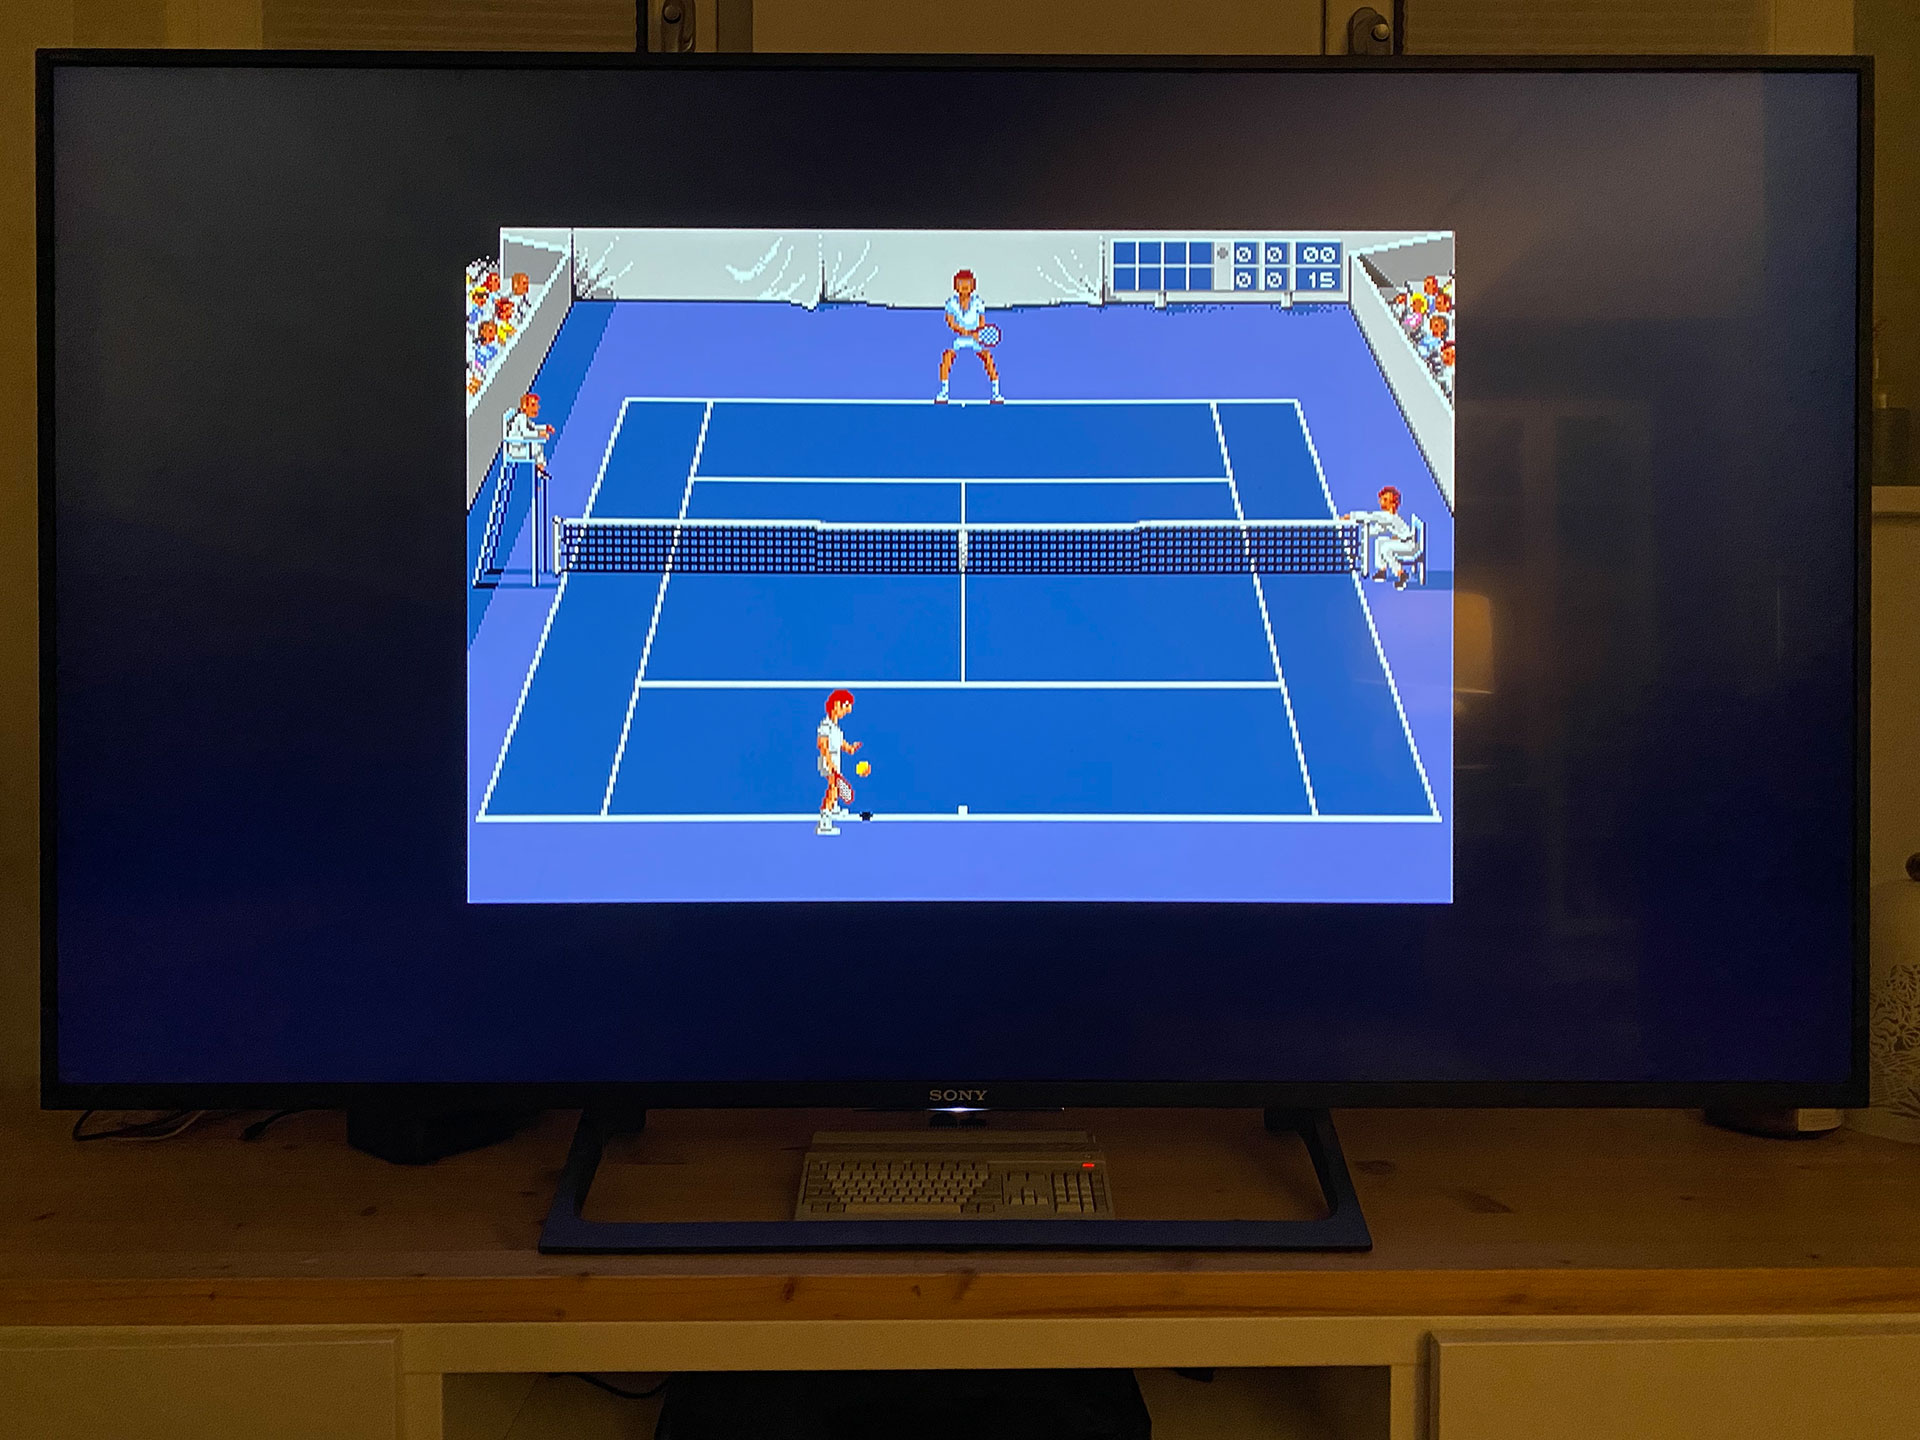 Perfekte Tennis-Balance auf Hartplatz, Sand und Gras (Amiga 500 Mini).